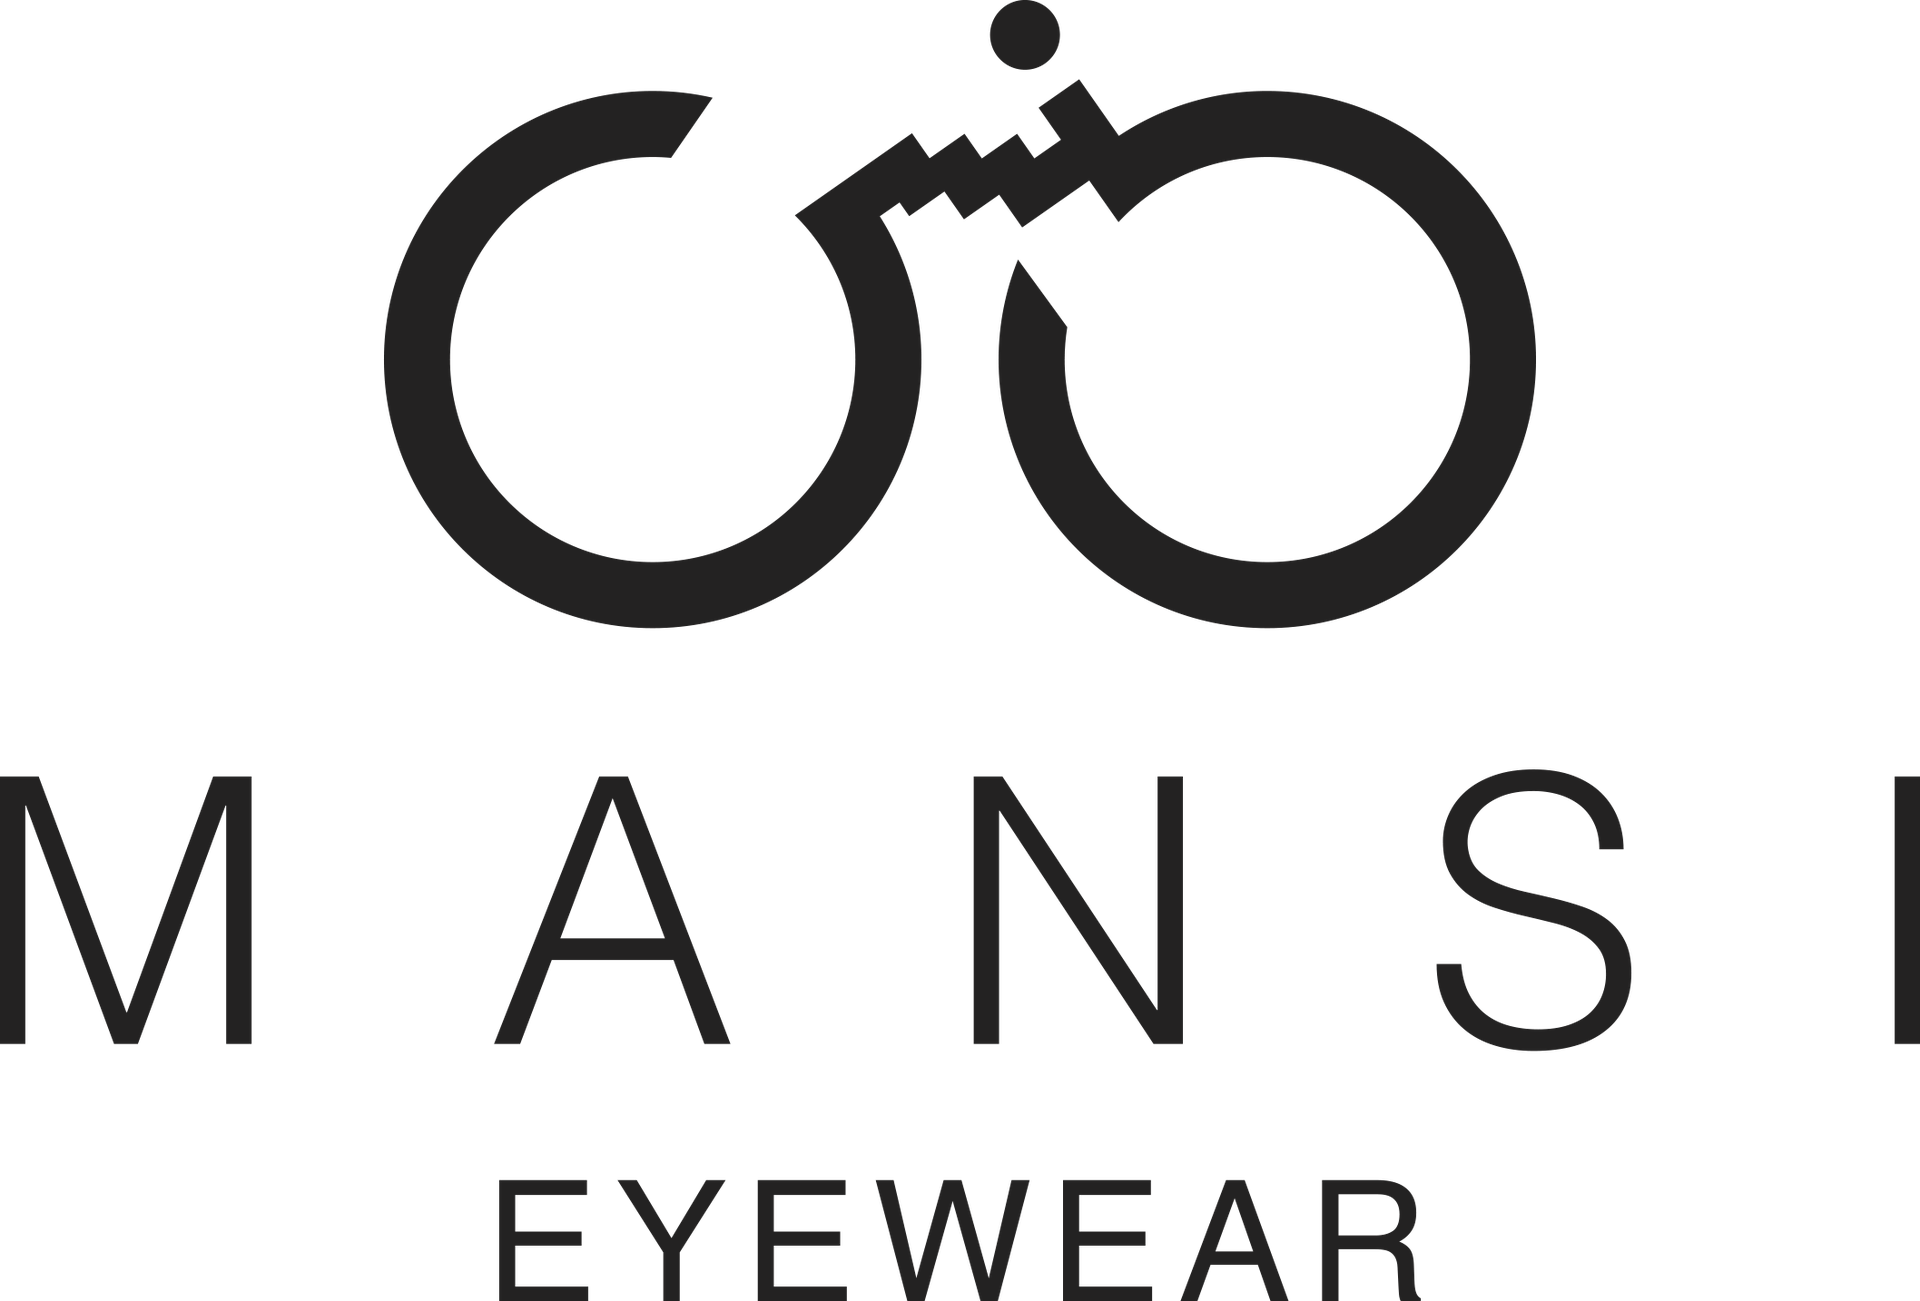 Mansi Eyewear